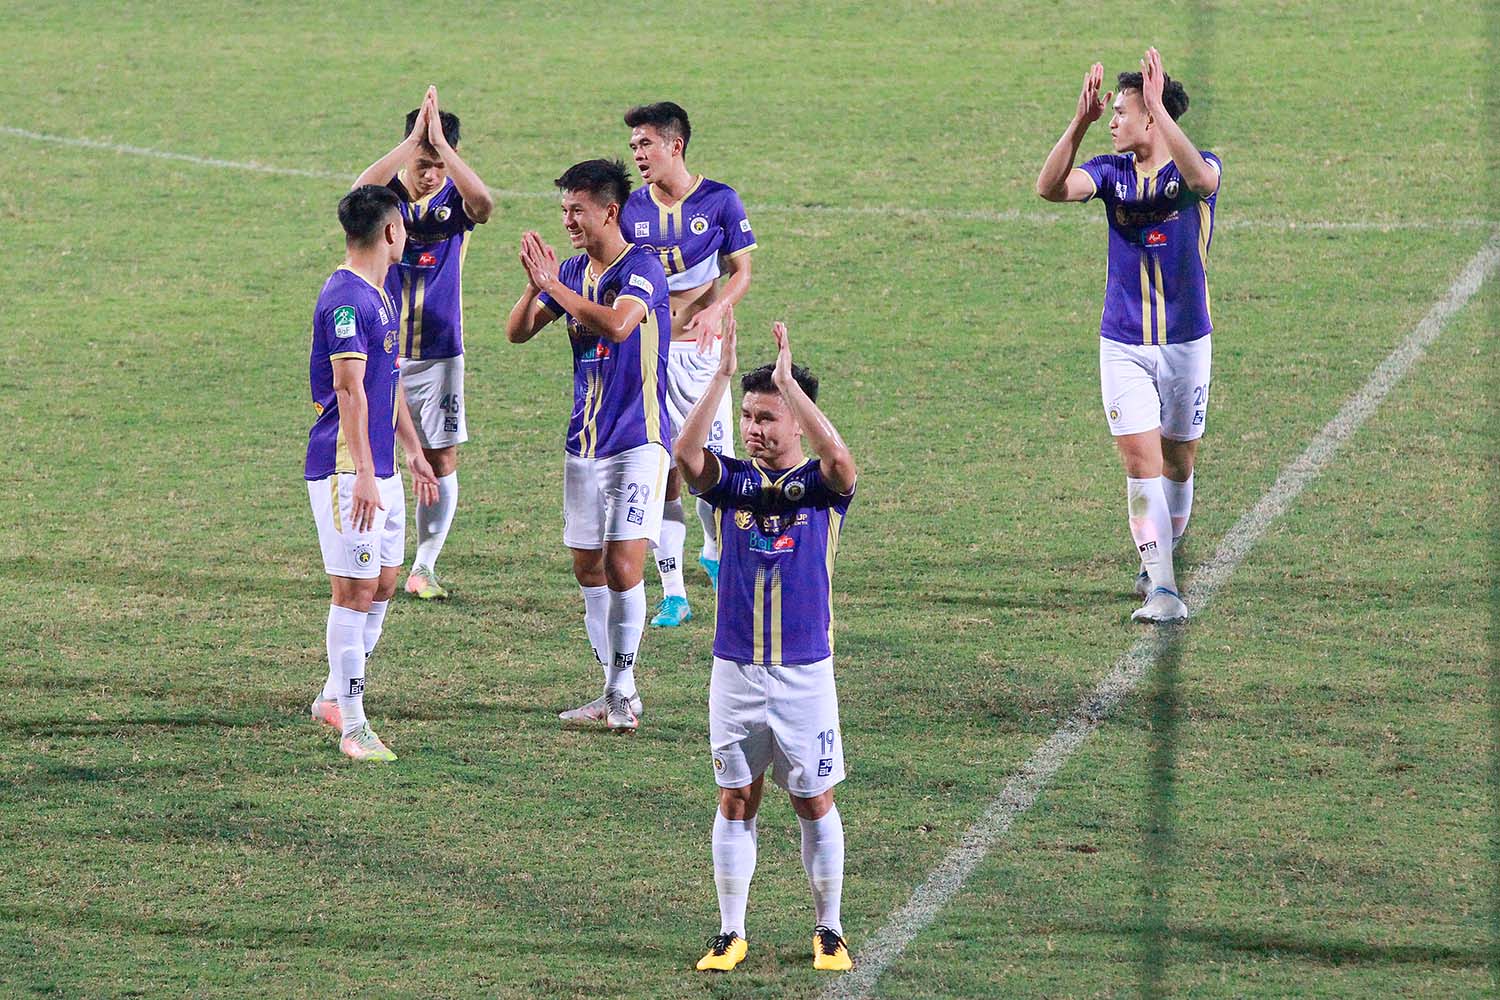 Sau trận đấu, Quang Hải đã rơi lệ, nói lời chào tạm biệt với đồng đội, ban lãnh đạo và người hâm mộ của đội bóng Thủ đô.